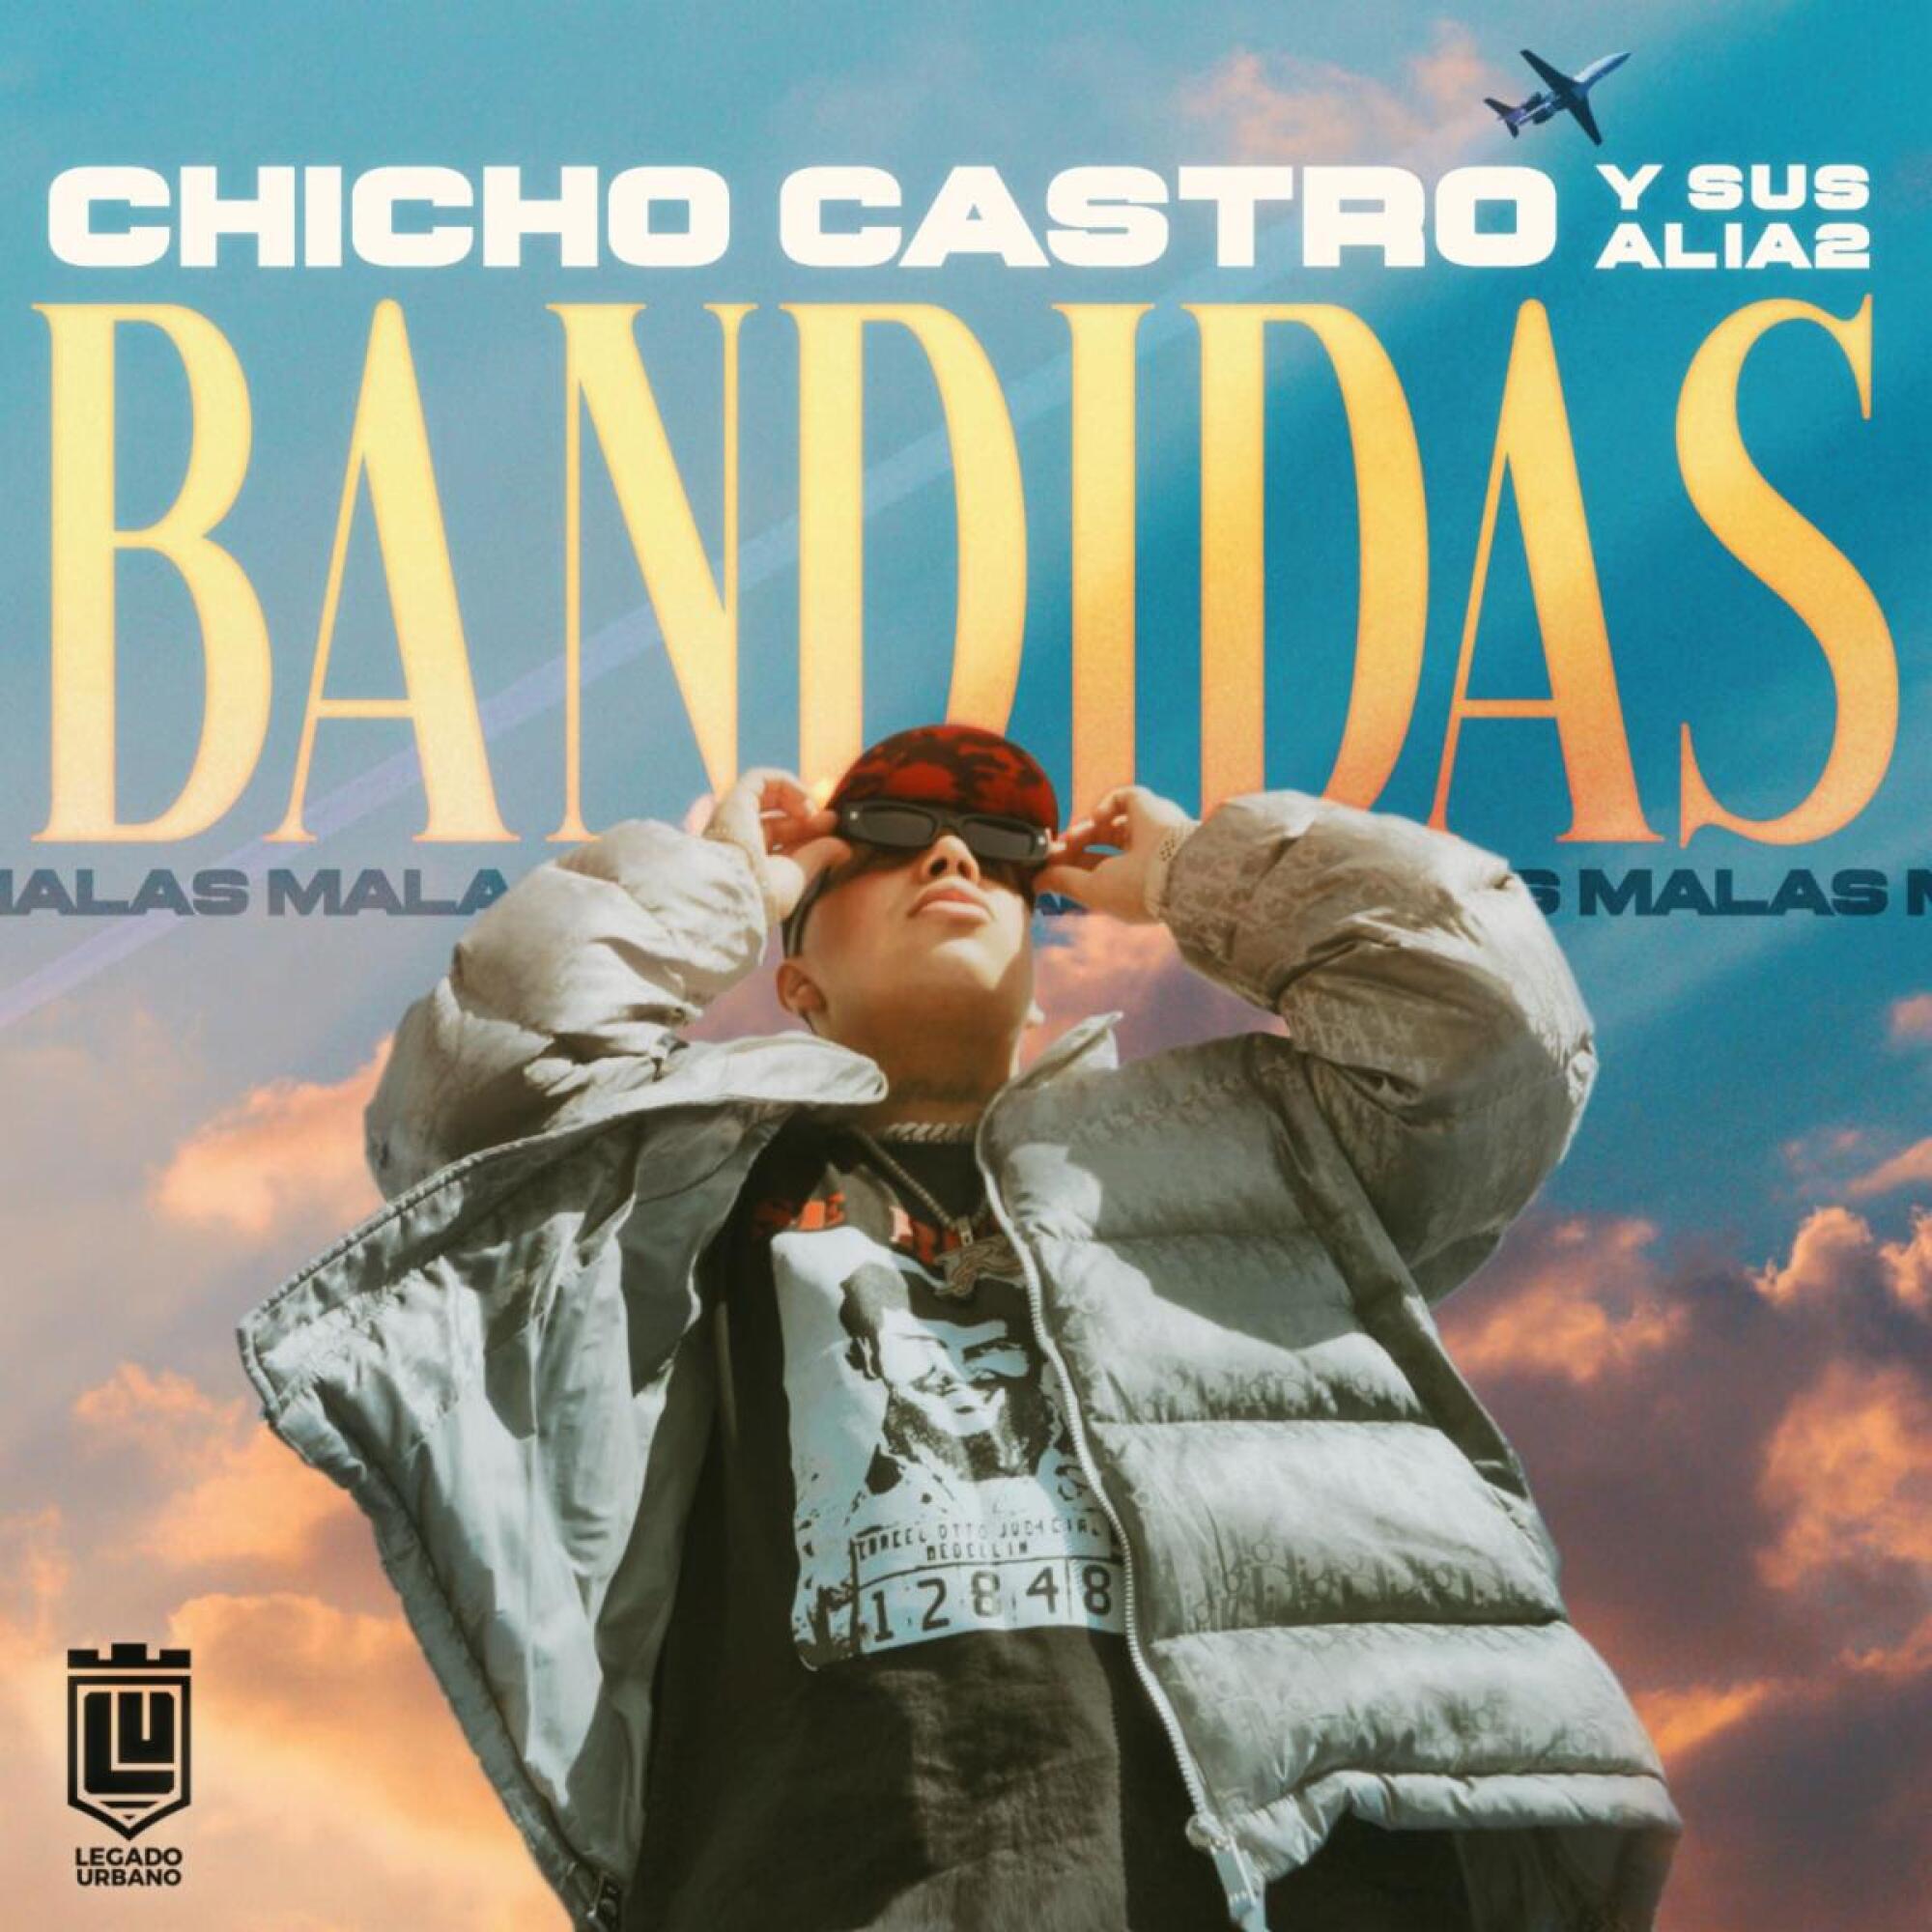 Portada del sencillo "Bandidas Malas", de Chicho Castro y sus Alia2.